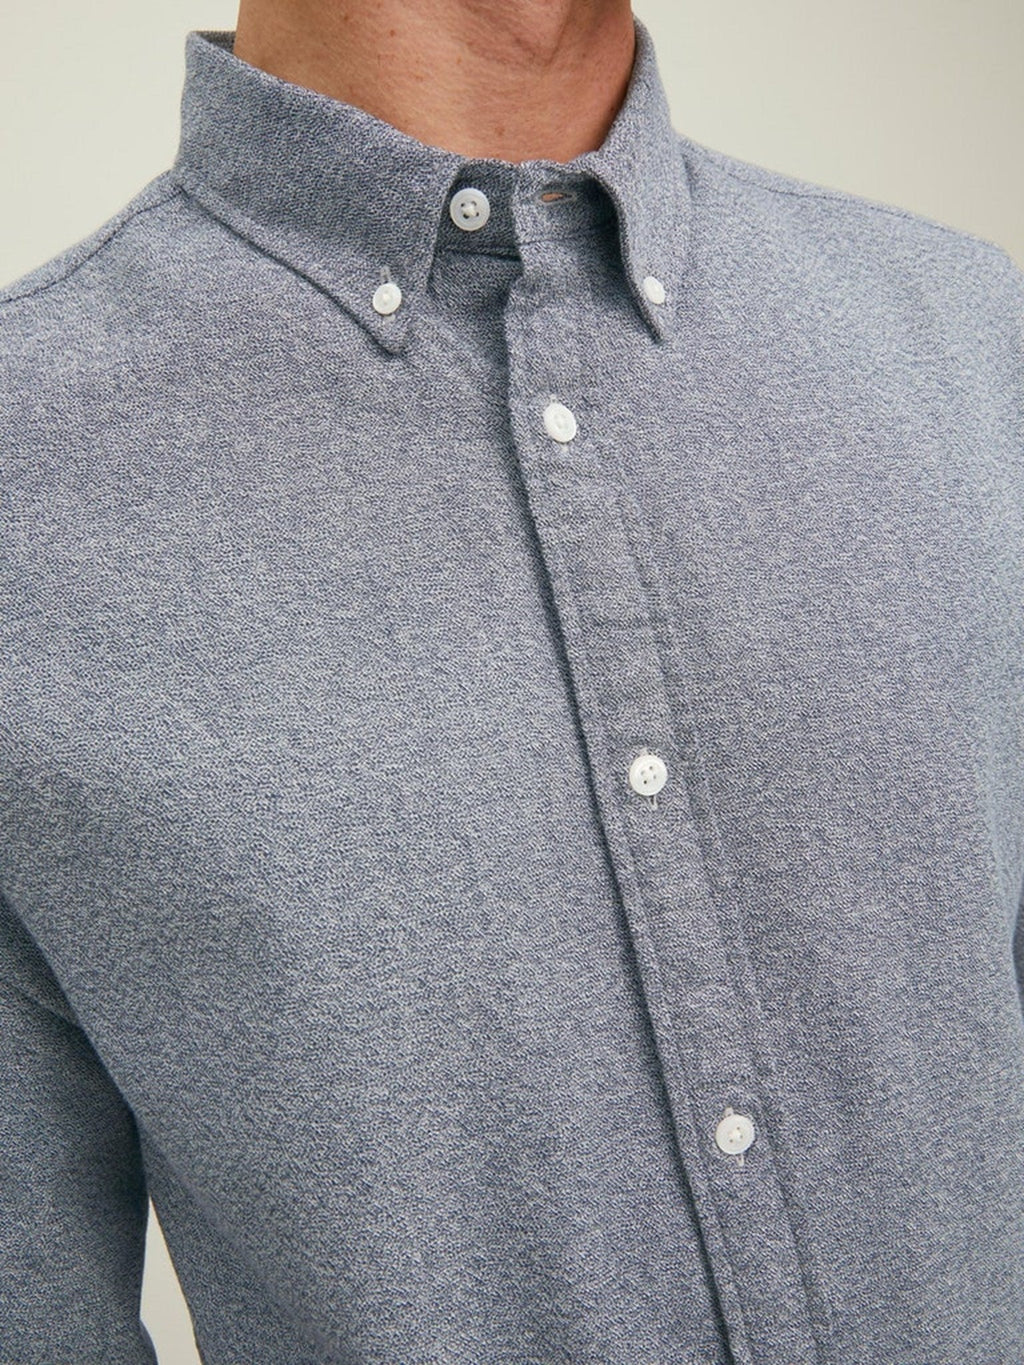 Shirt ruspante di ruscello - blazer blu scuro